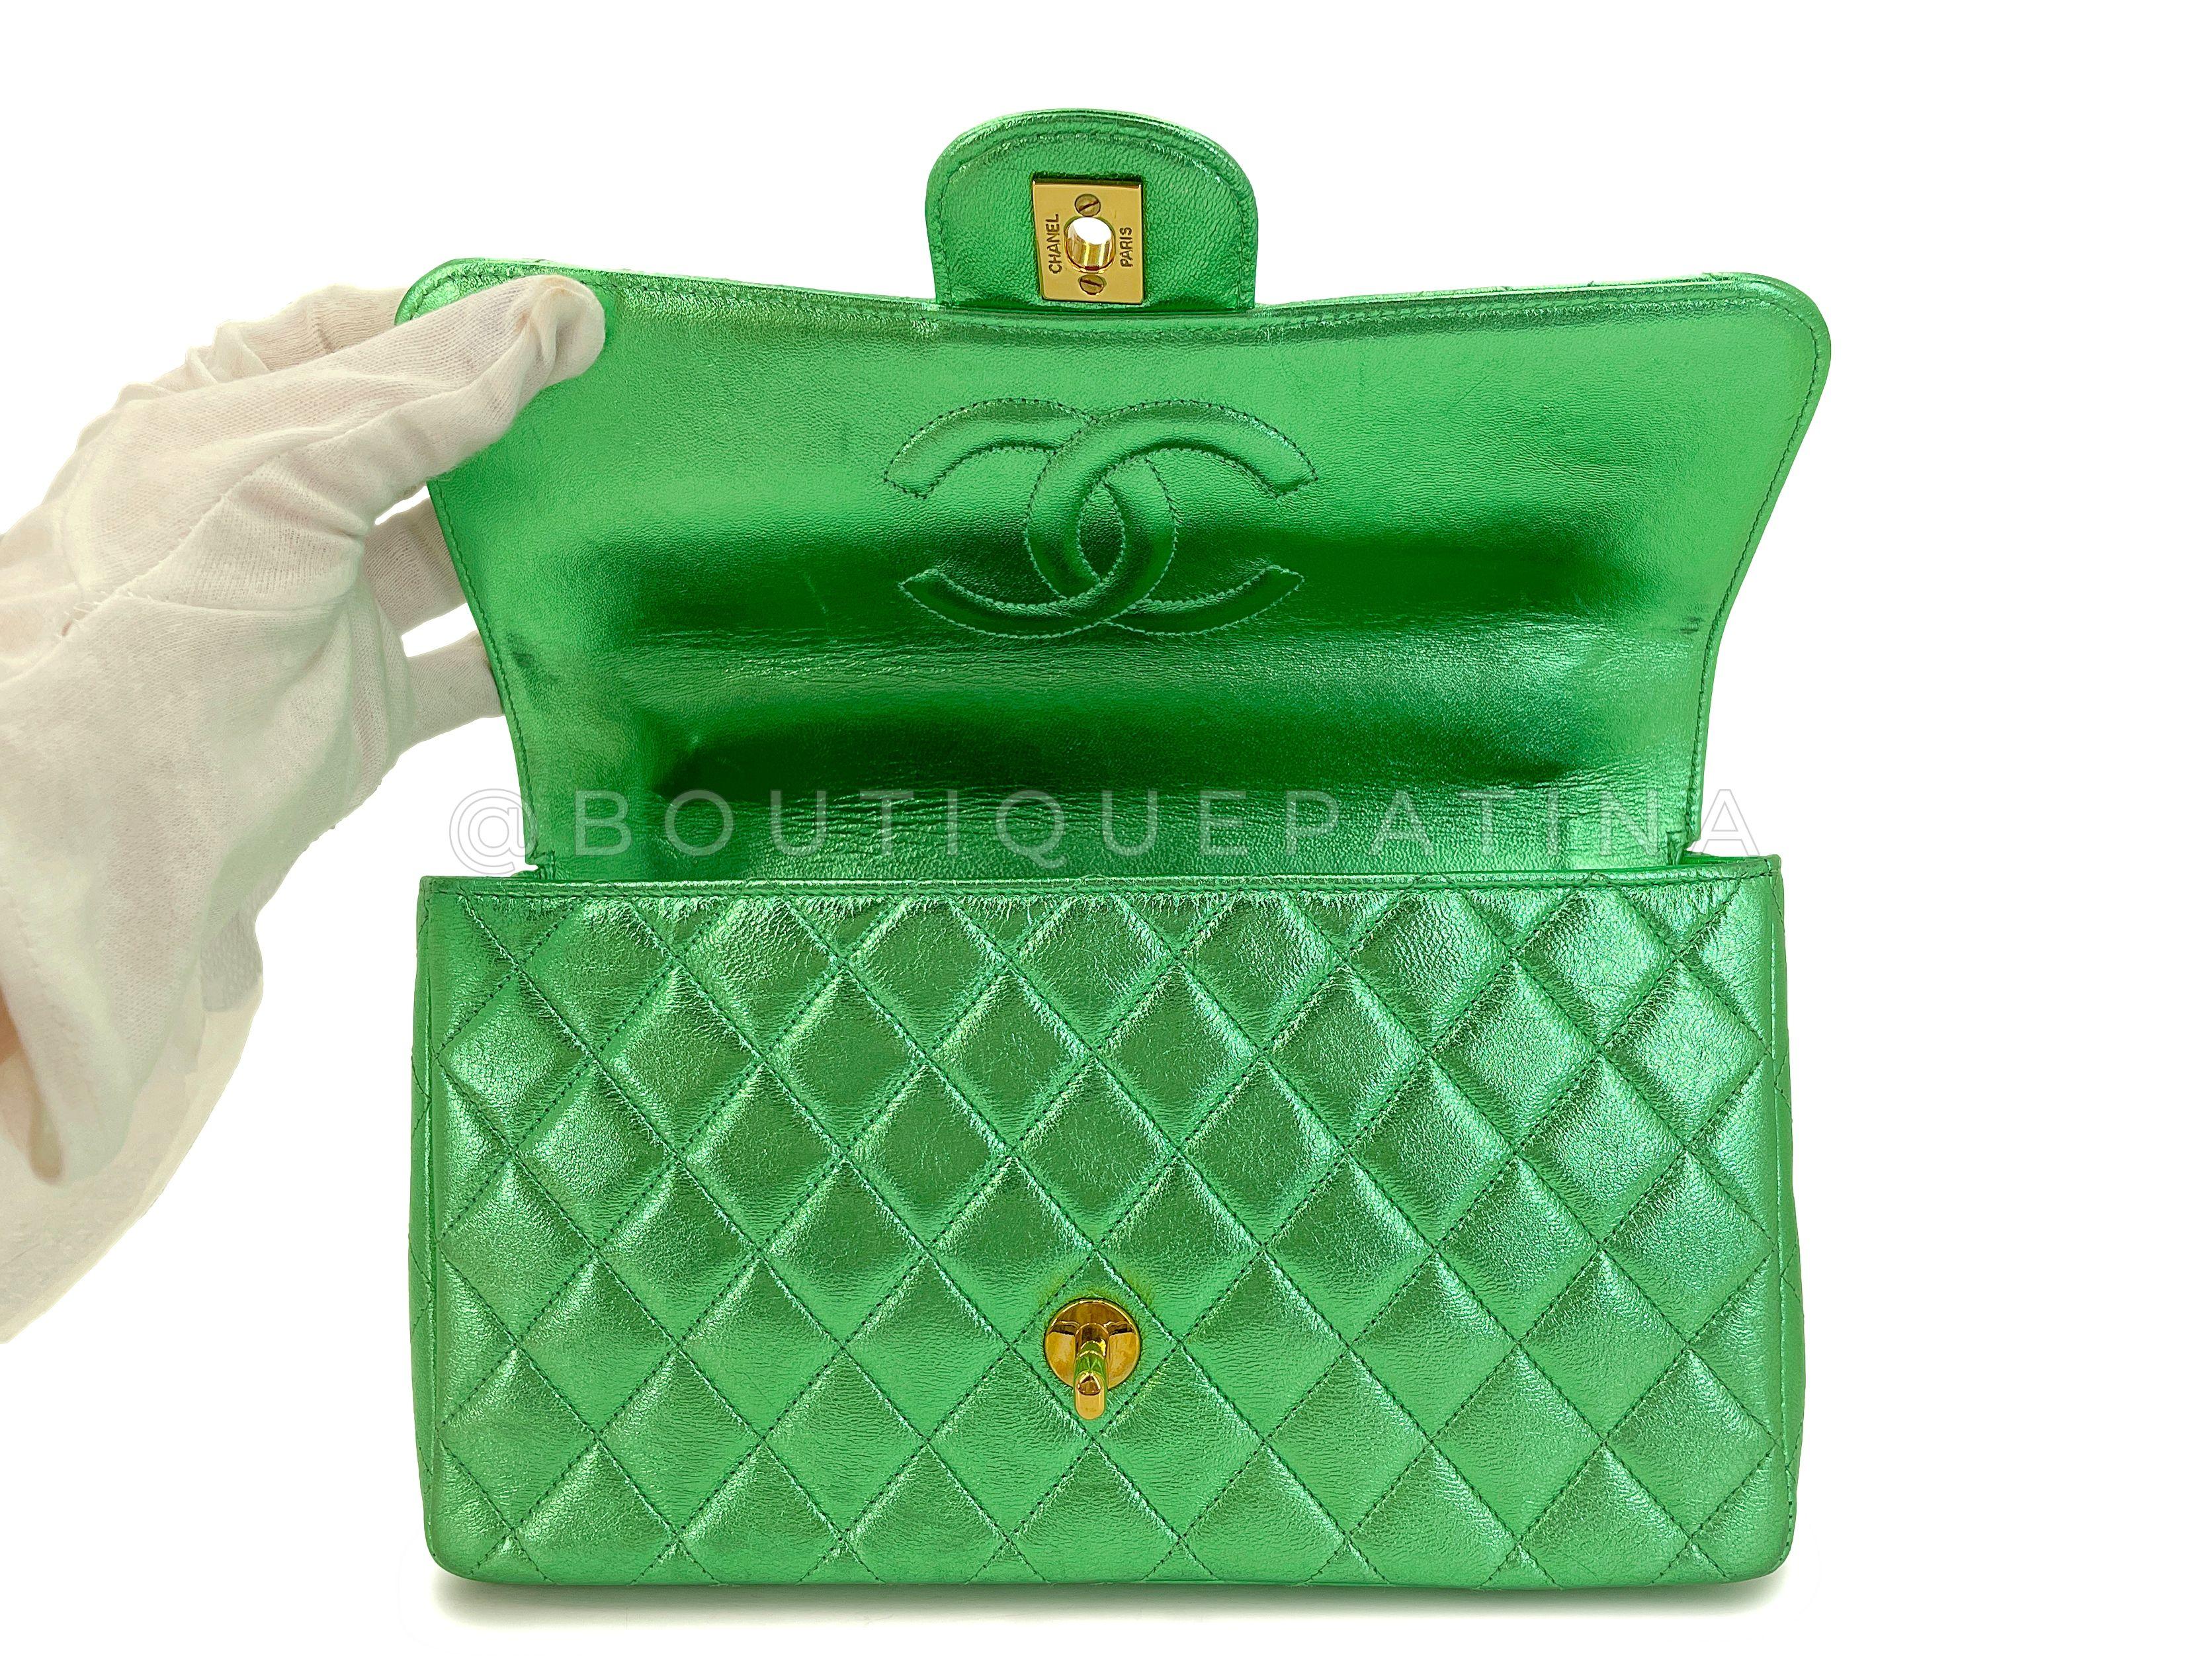 Chanel 1994 Vintage Parent Child Bag Kelly Flap Set Metallic Green 24k GHW 67742 For Sale 5